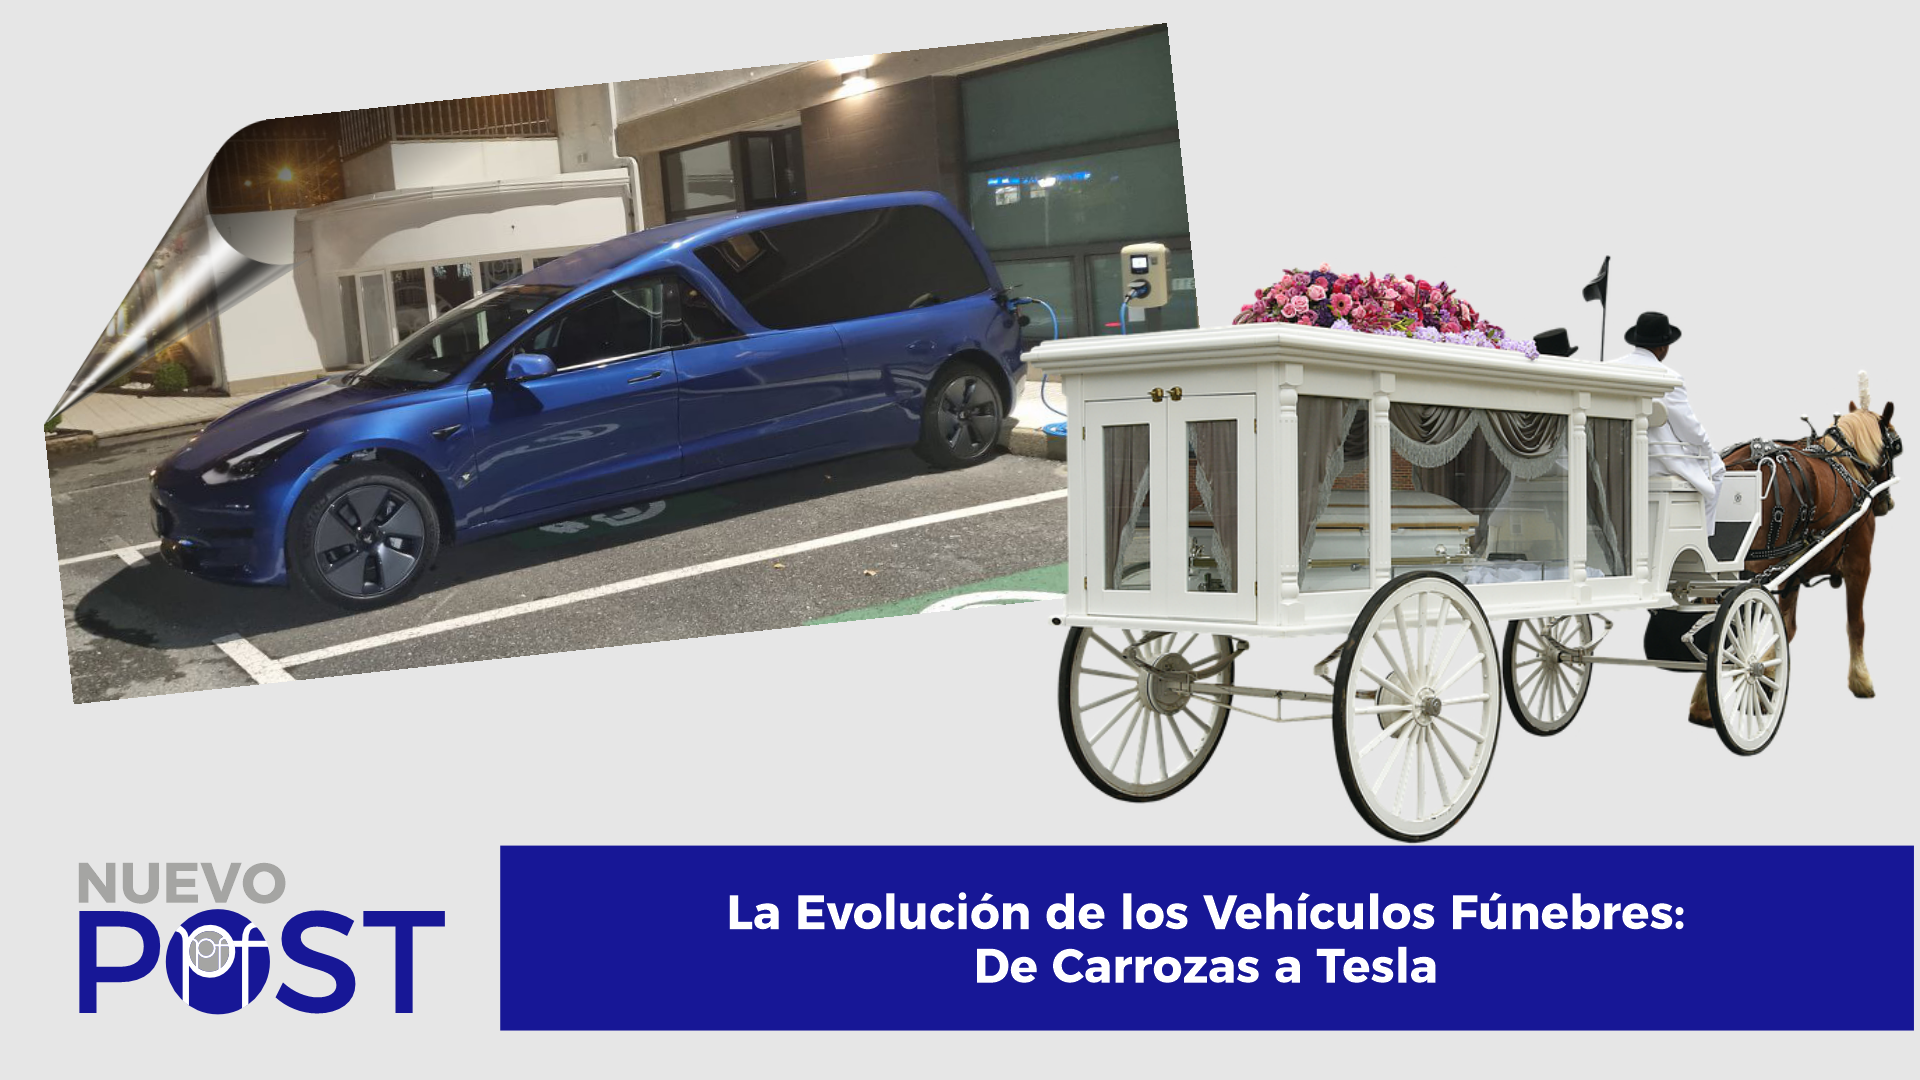 La Evolución de los Vehículos Fúnebres: De Carrozas a Tesla